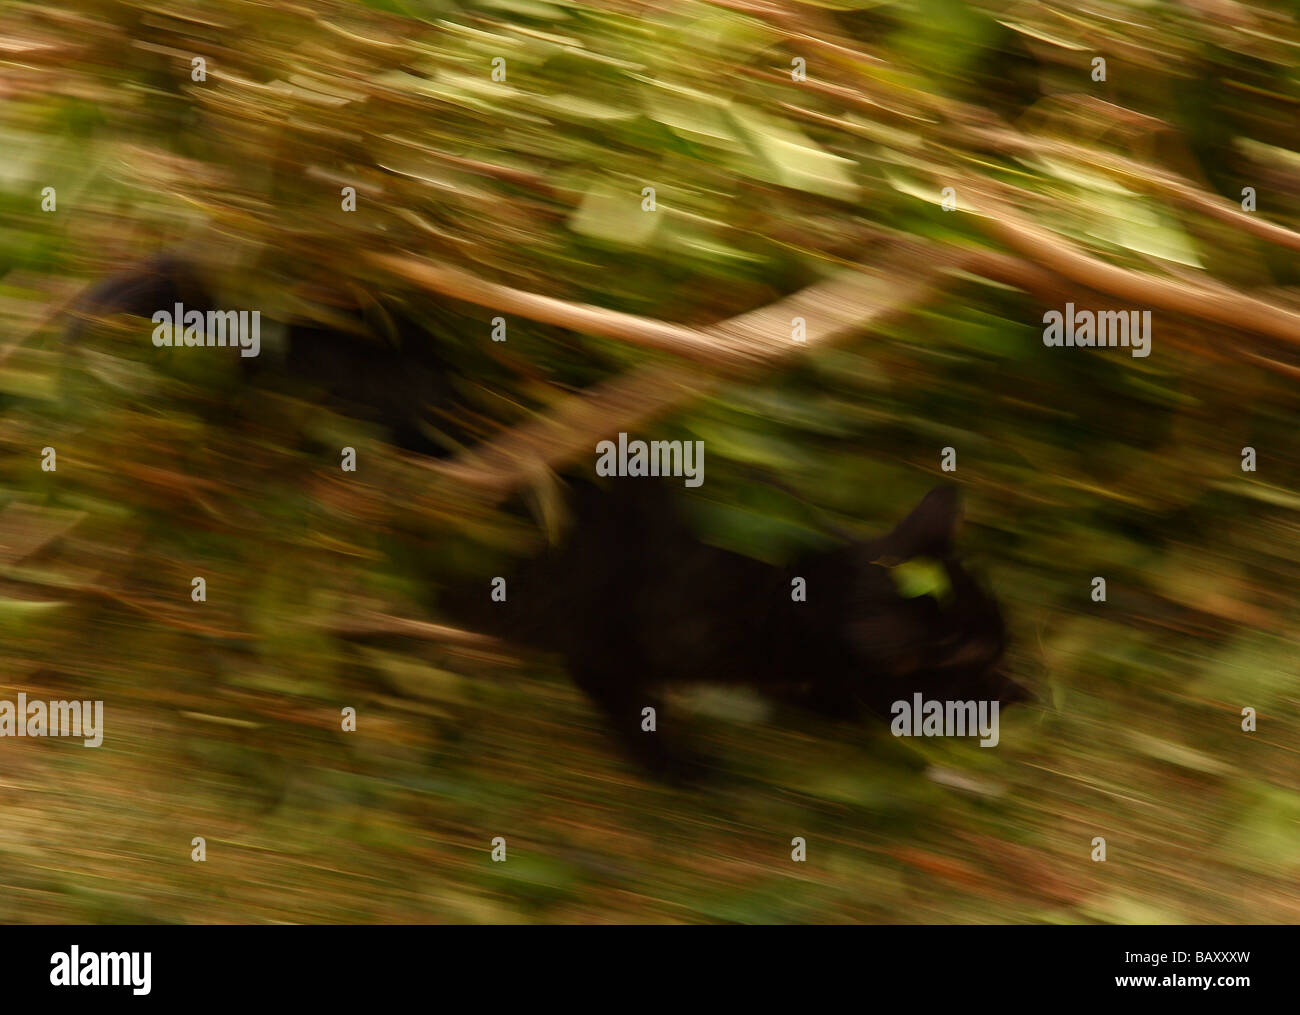 Una imagen impresionista de un pequeño gatito negro agachado detrás de algunas ramas de hiedra Foto de stock